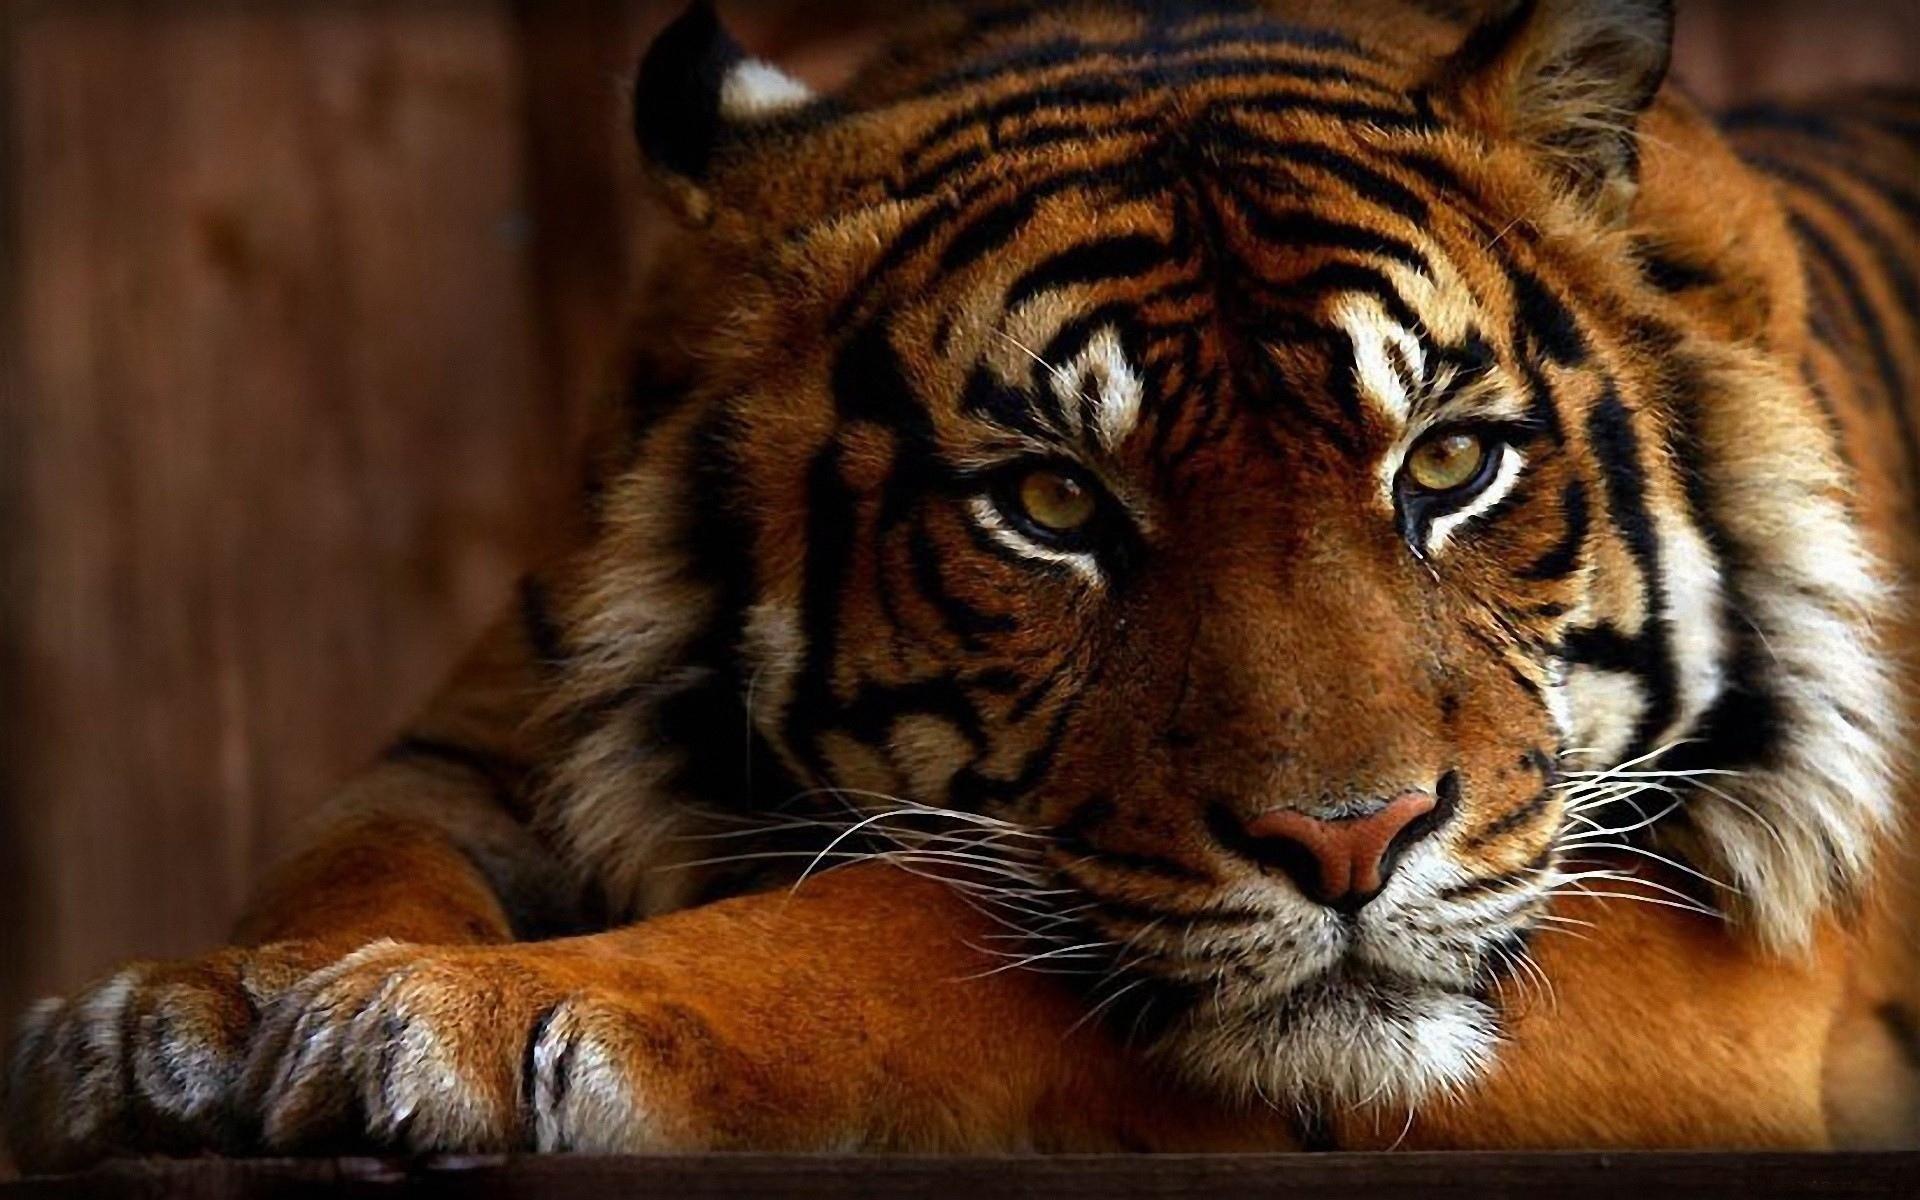 Tiger wallpaper hd